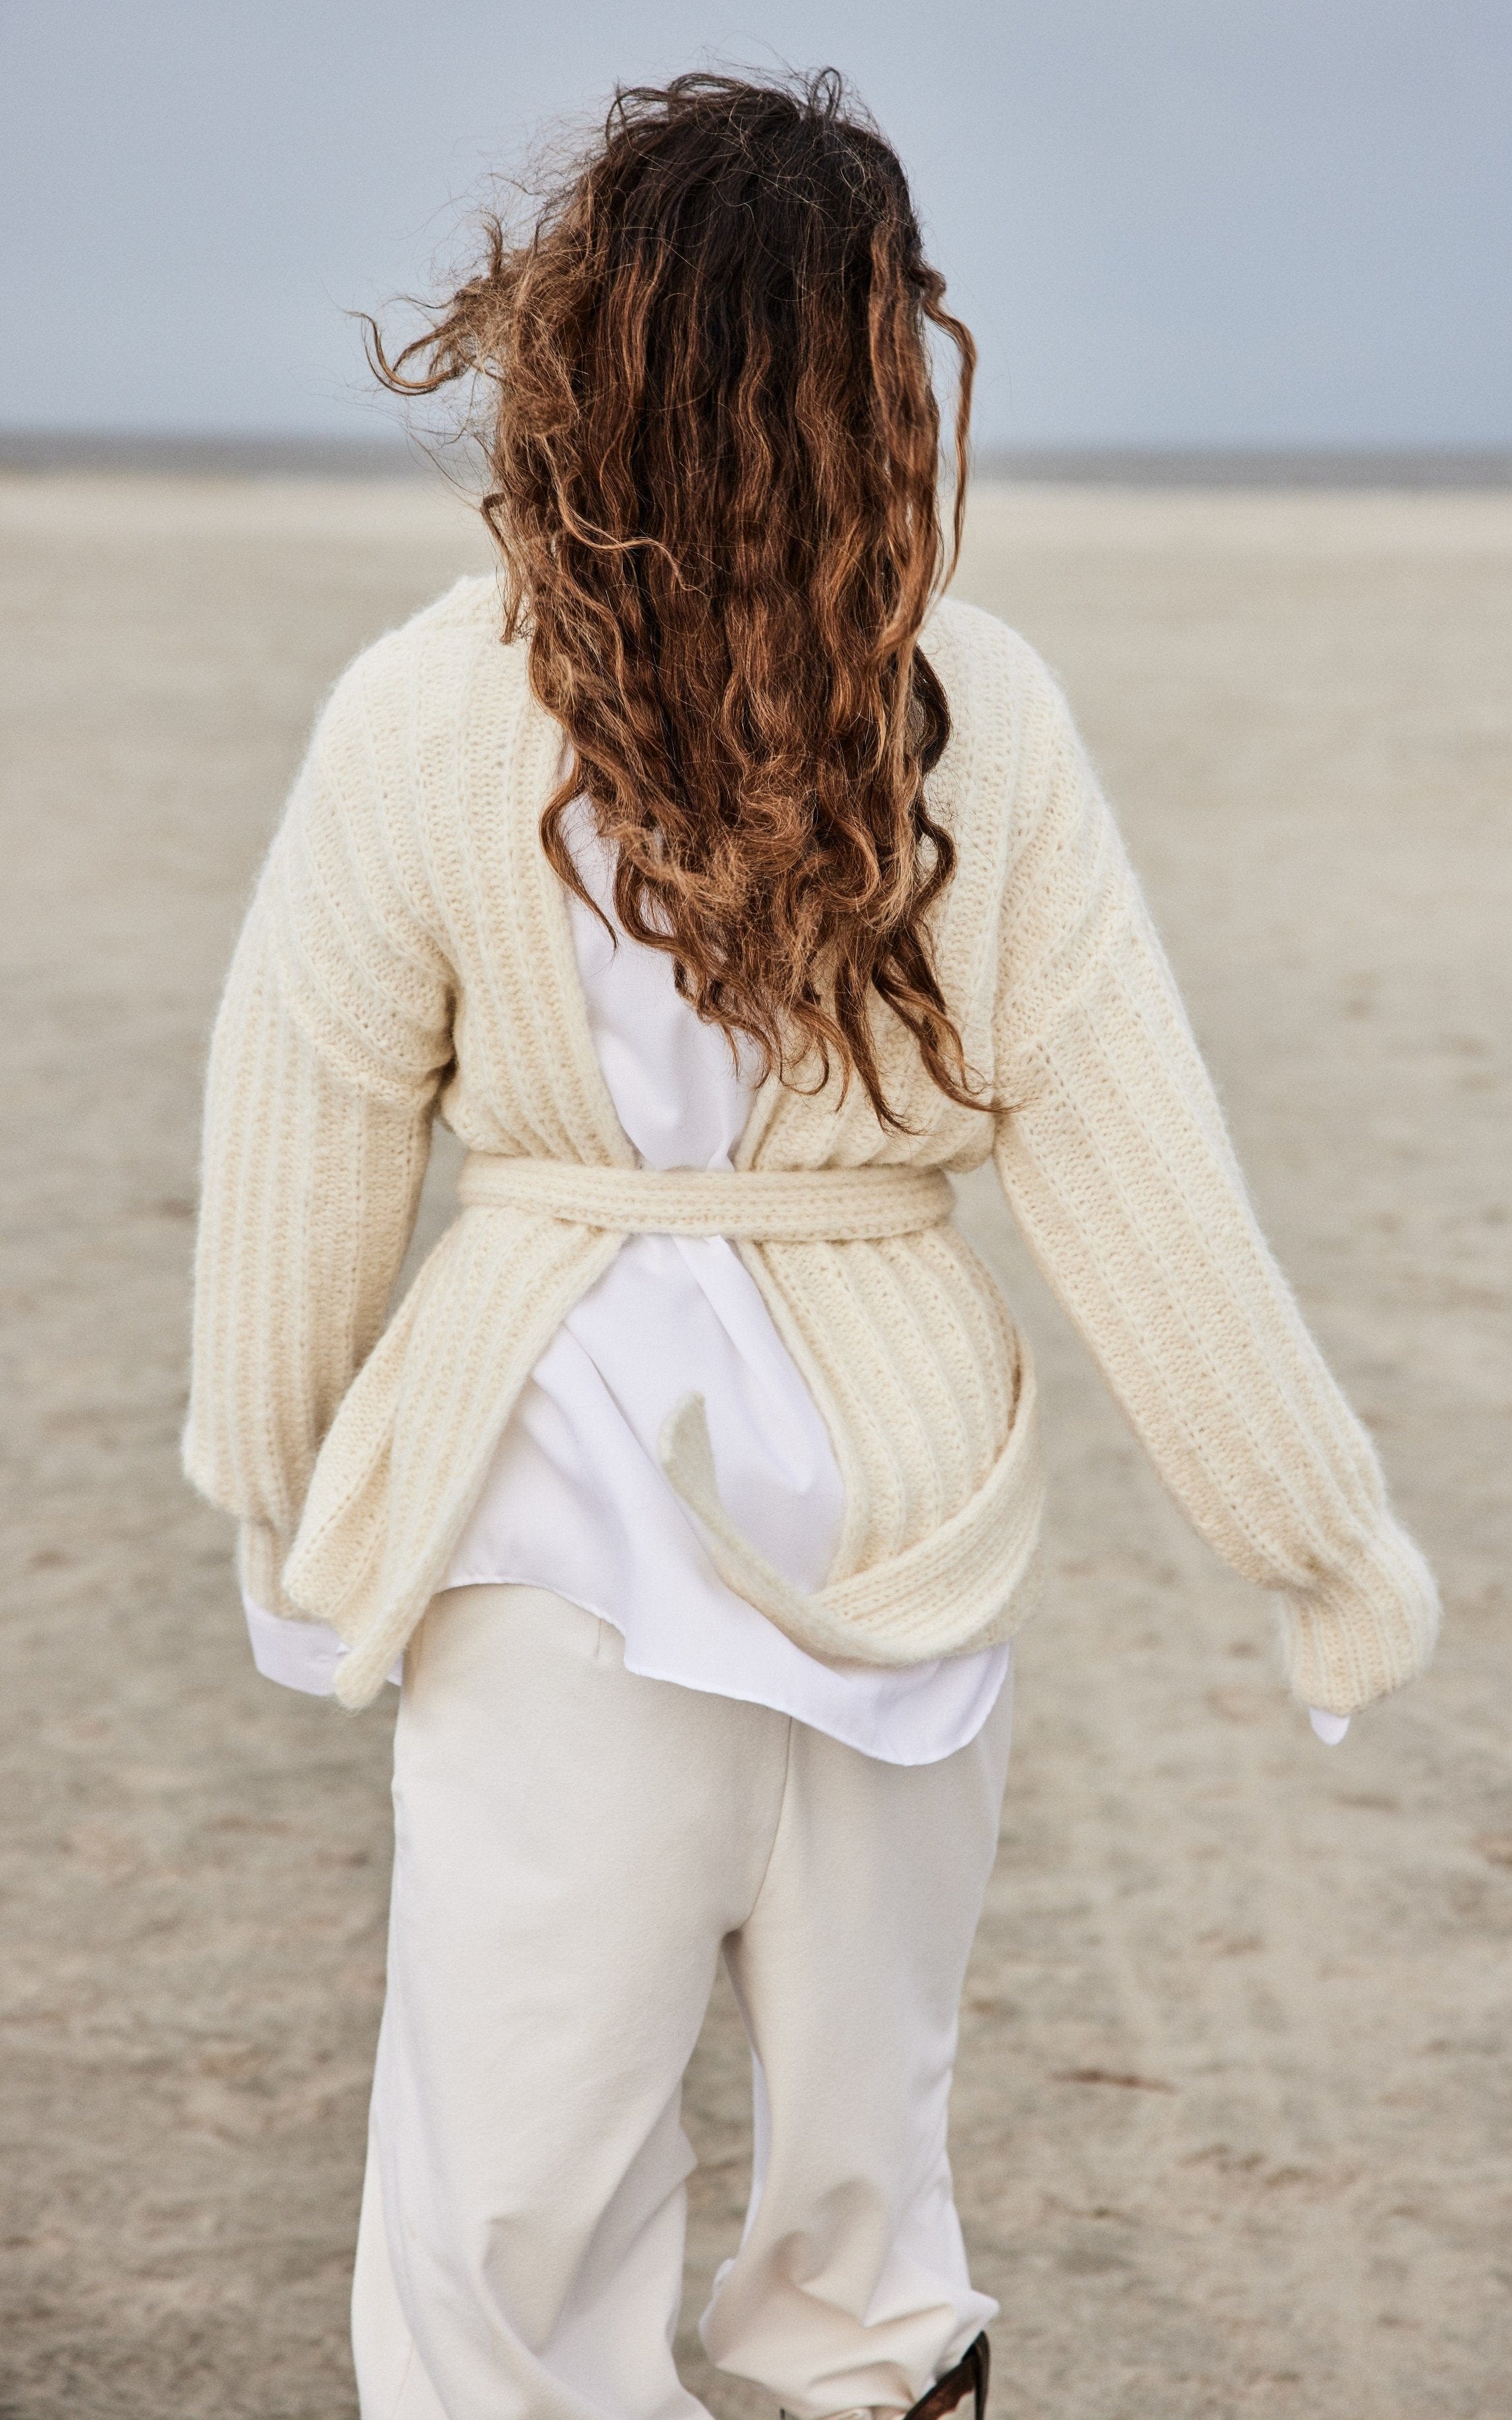 Pullover mit Rückenschlitz und Gürtel - ALPACA MODA - Strickset von LANA GROSSA jetzt online kaufen bei OONIQUE